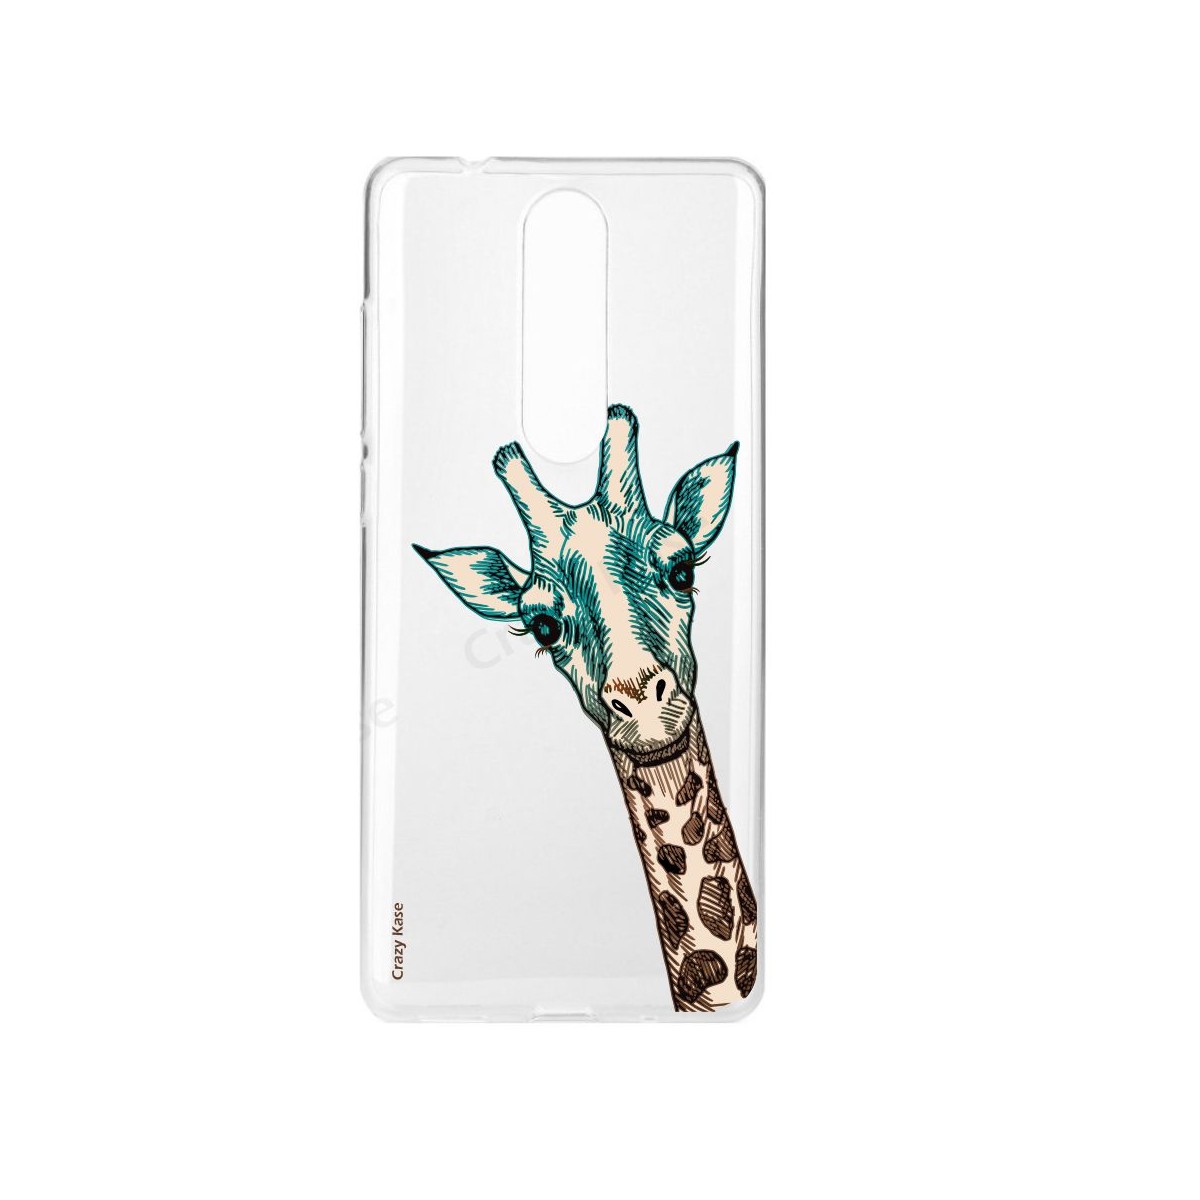 Coque Nokia 5.1 souple motif Tête de Girafe - Crazy Kase